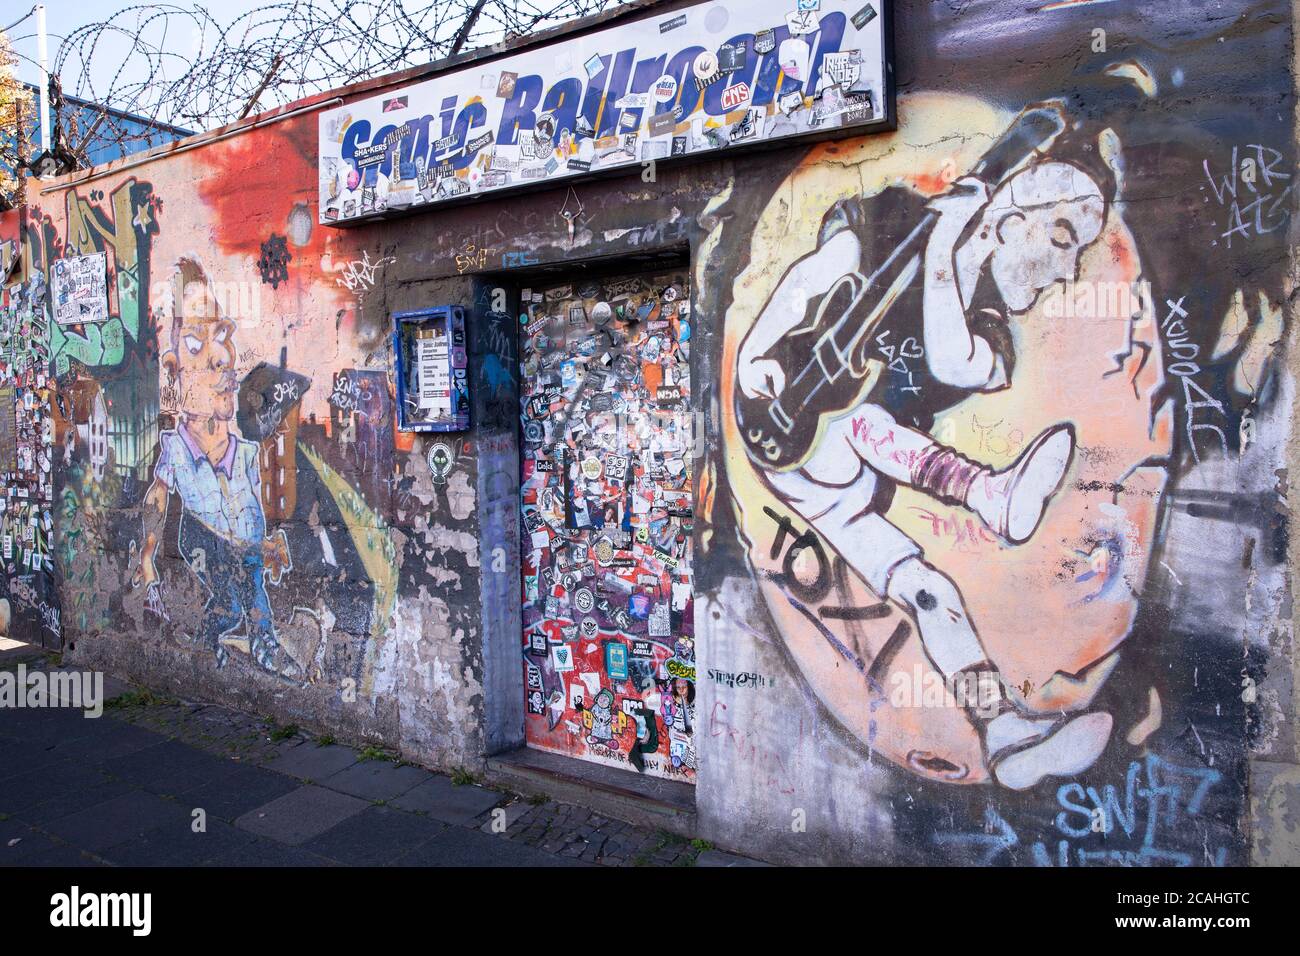 Autocollant apposé sur la porte d'entrée de la salle de bal Punk-Rock Club Sonic dans le quartier Ehrenfeld, Cologne, Allemagne. Aufkleber auf dem Eingangstor zum Punk Banque D'Images